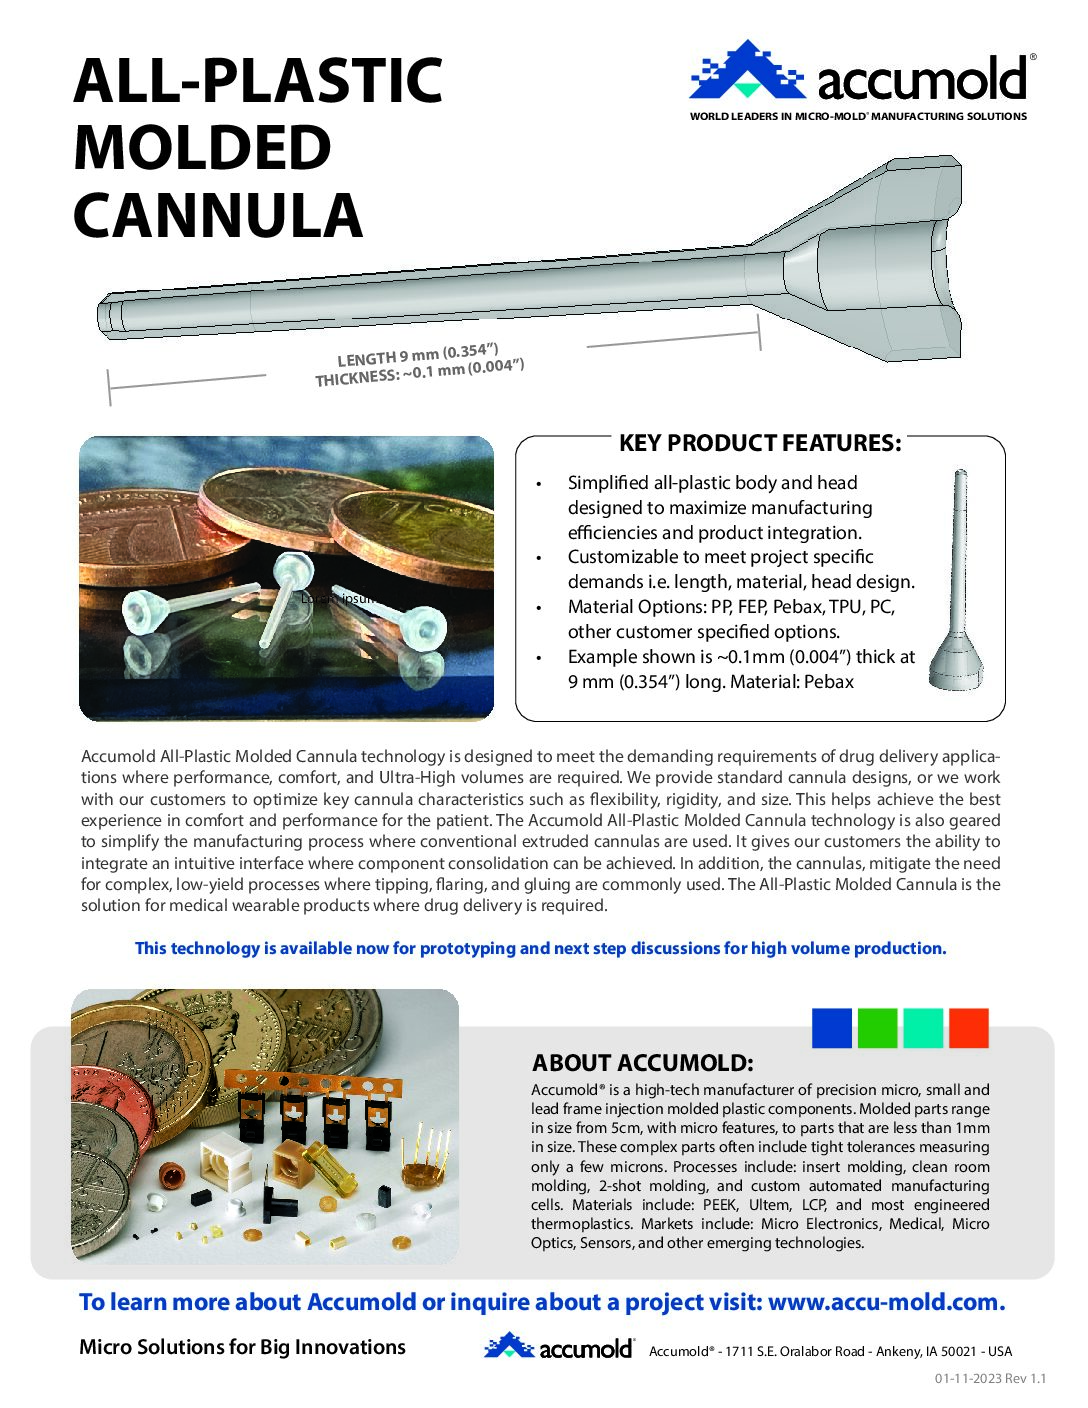 Accumold-Cannula-01-2023-Rev-01-1